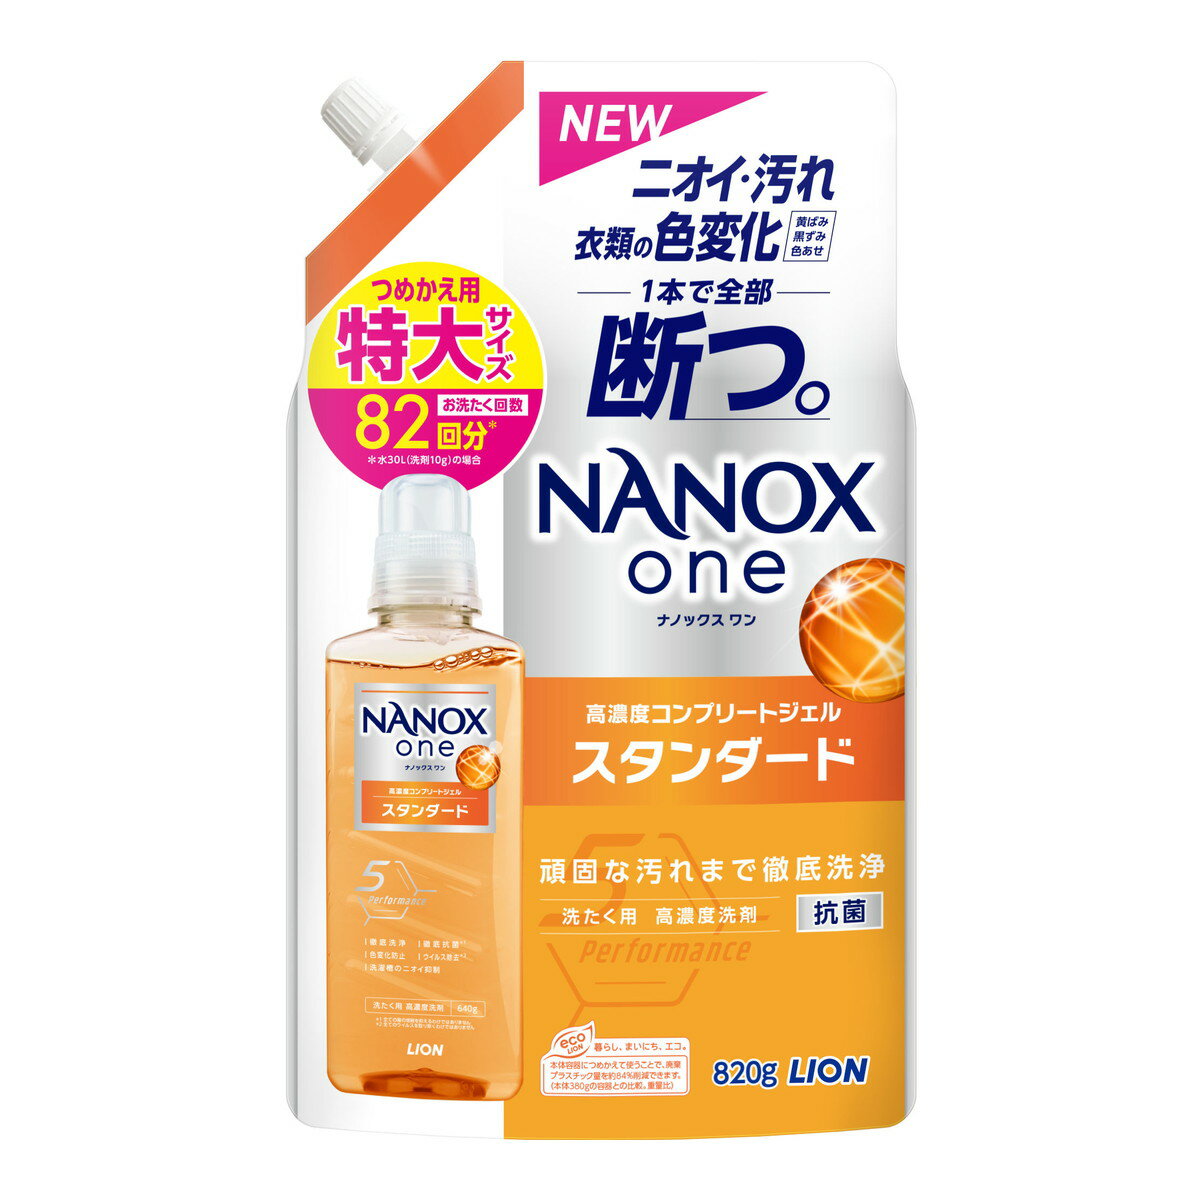 NANOX one スタンダード つめかえ用 特大サイズ 820g